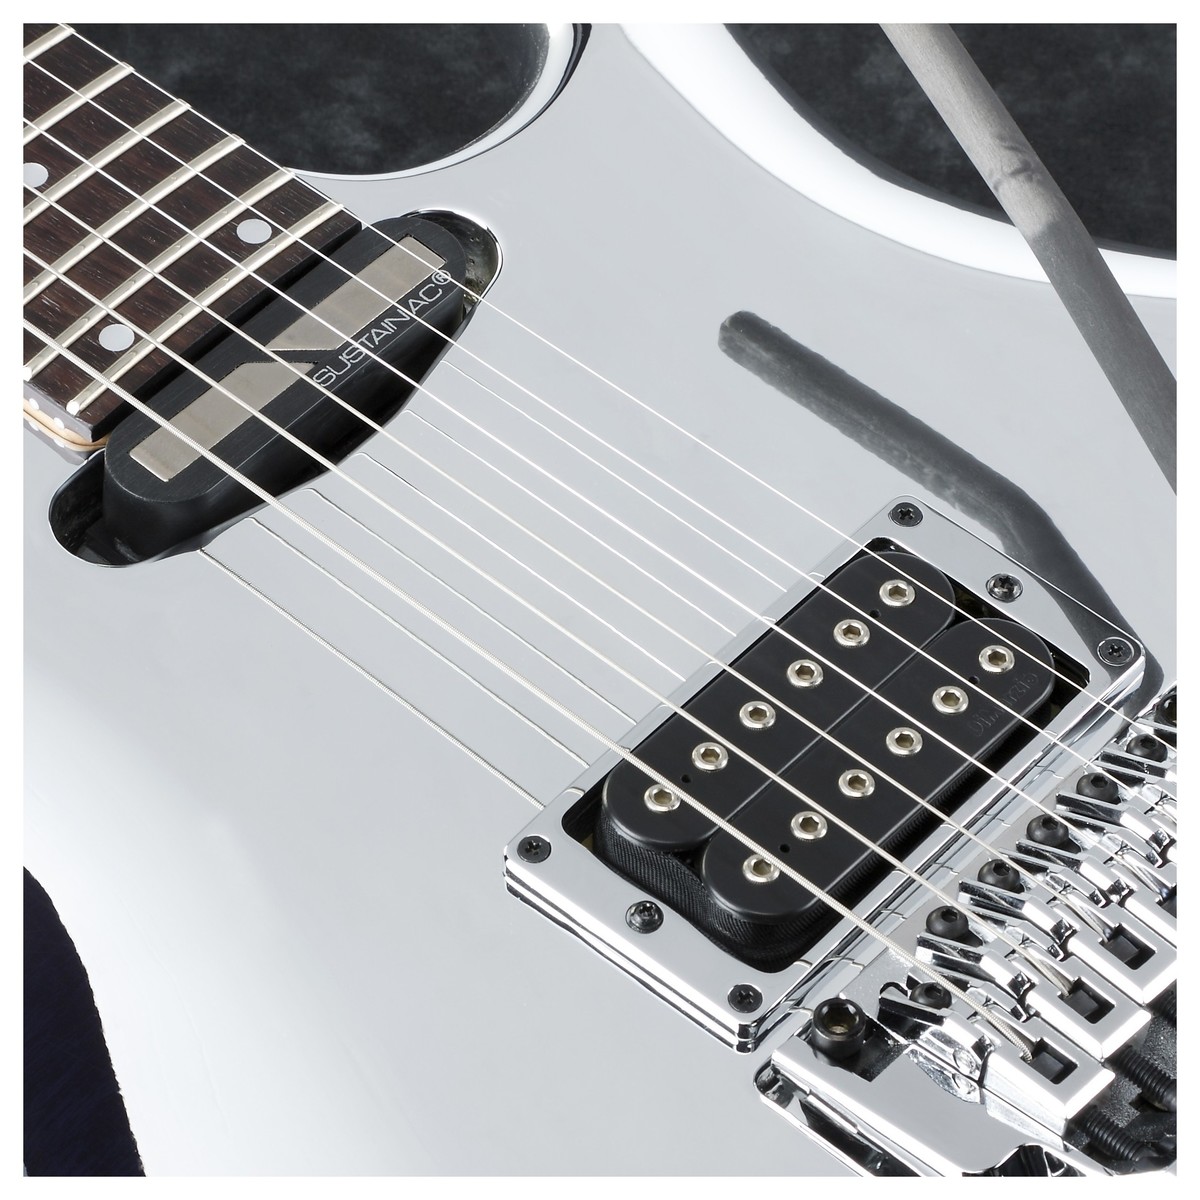 Ibanez Joe Satriani Js1cr Signature Japon H Sustainiac Fr Rw - Chrome Boy - Guitarra eléctrica de doble corte. - Variation 2